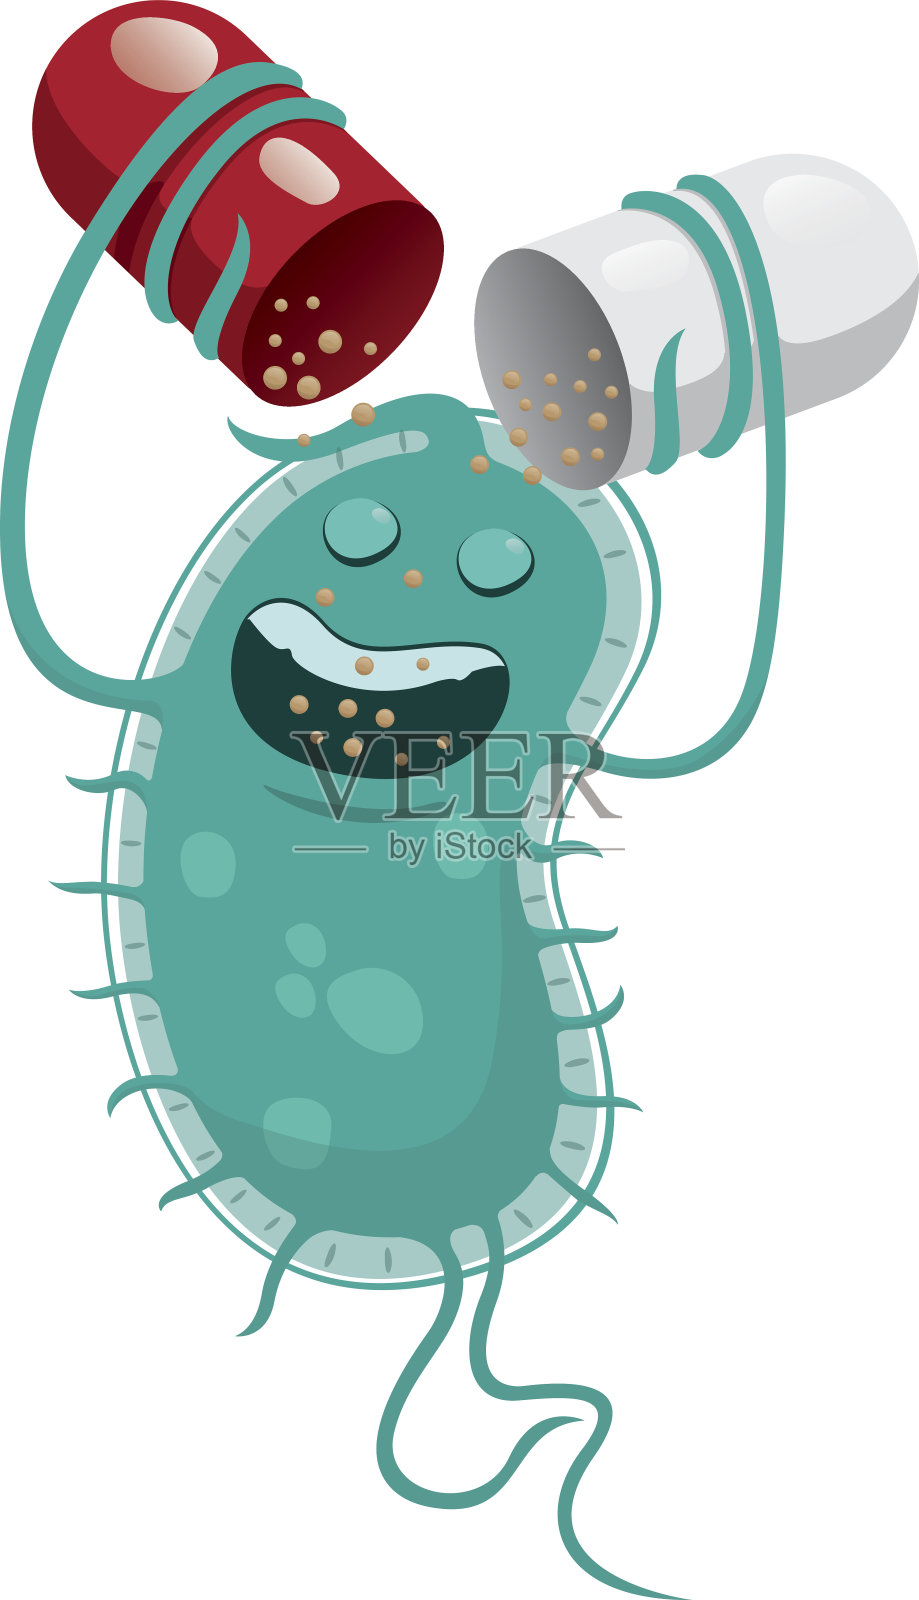 插图描绘了一个超级细菌，一个微生物，抗药性或抗生素。理想的信息和药用材料插画图片素材